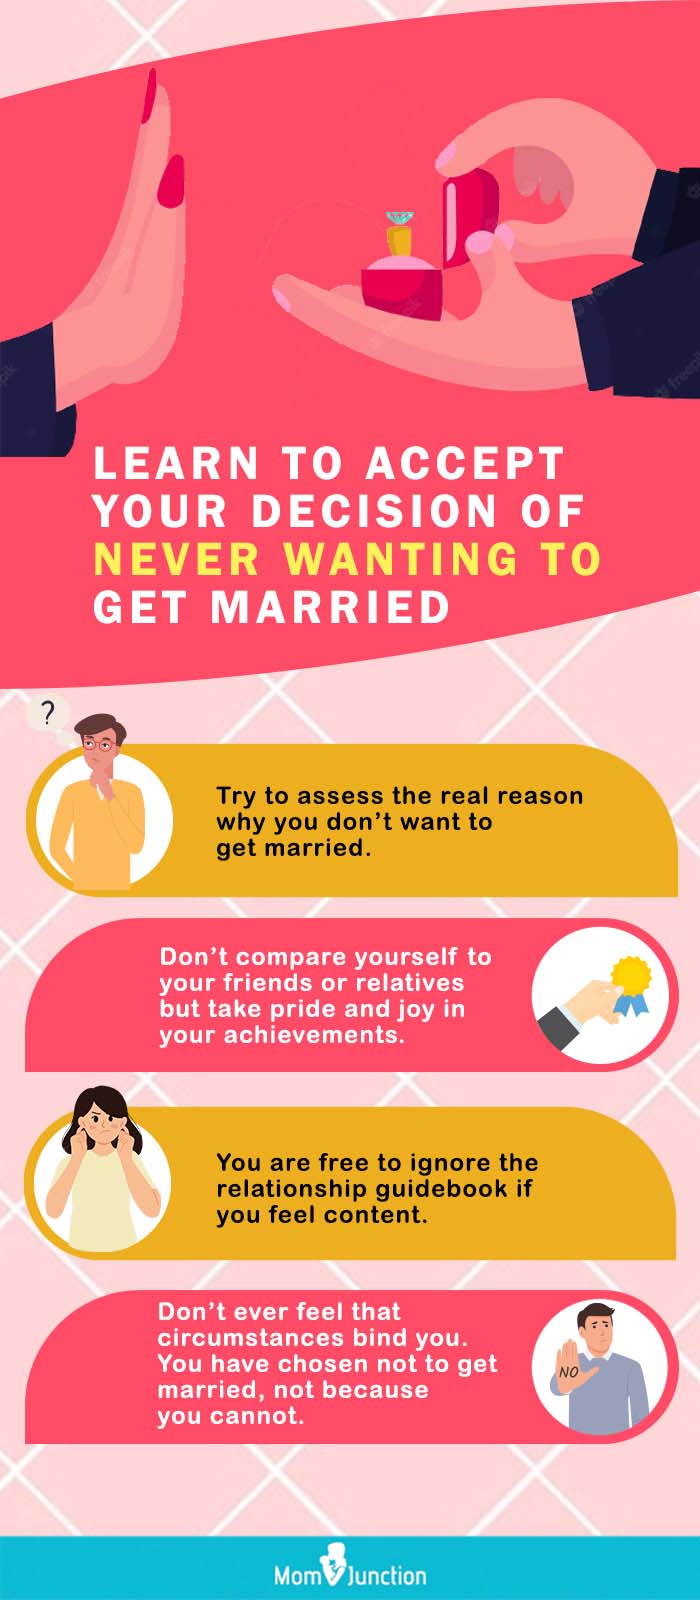 如果你不想结婚该怎么办(信息图)